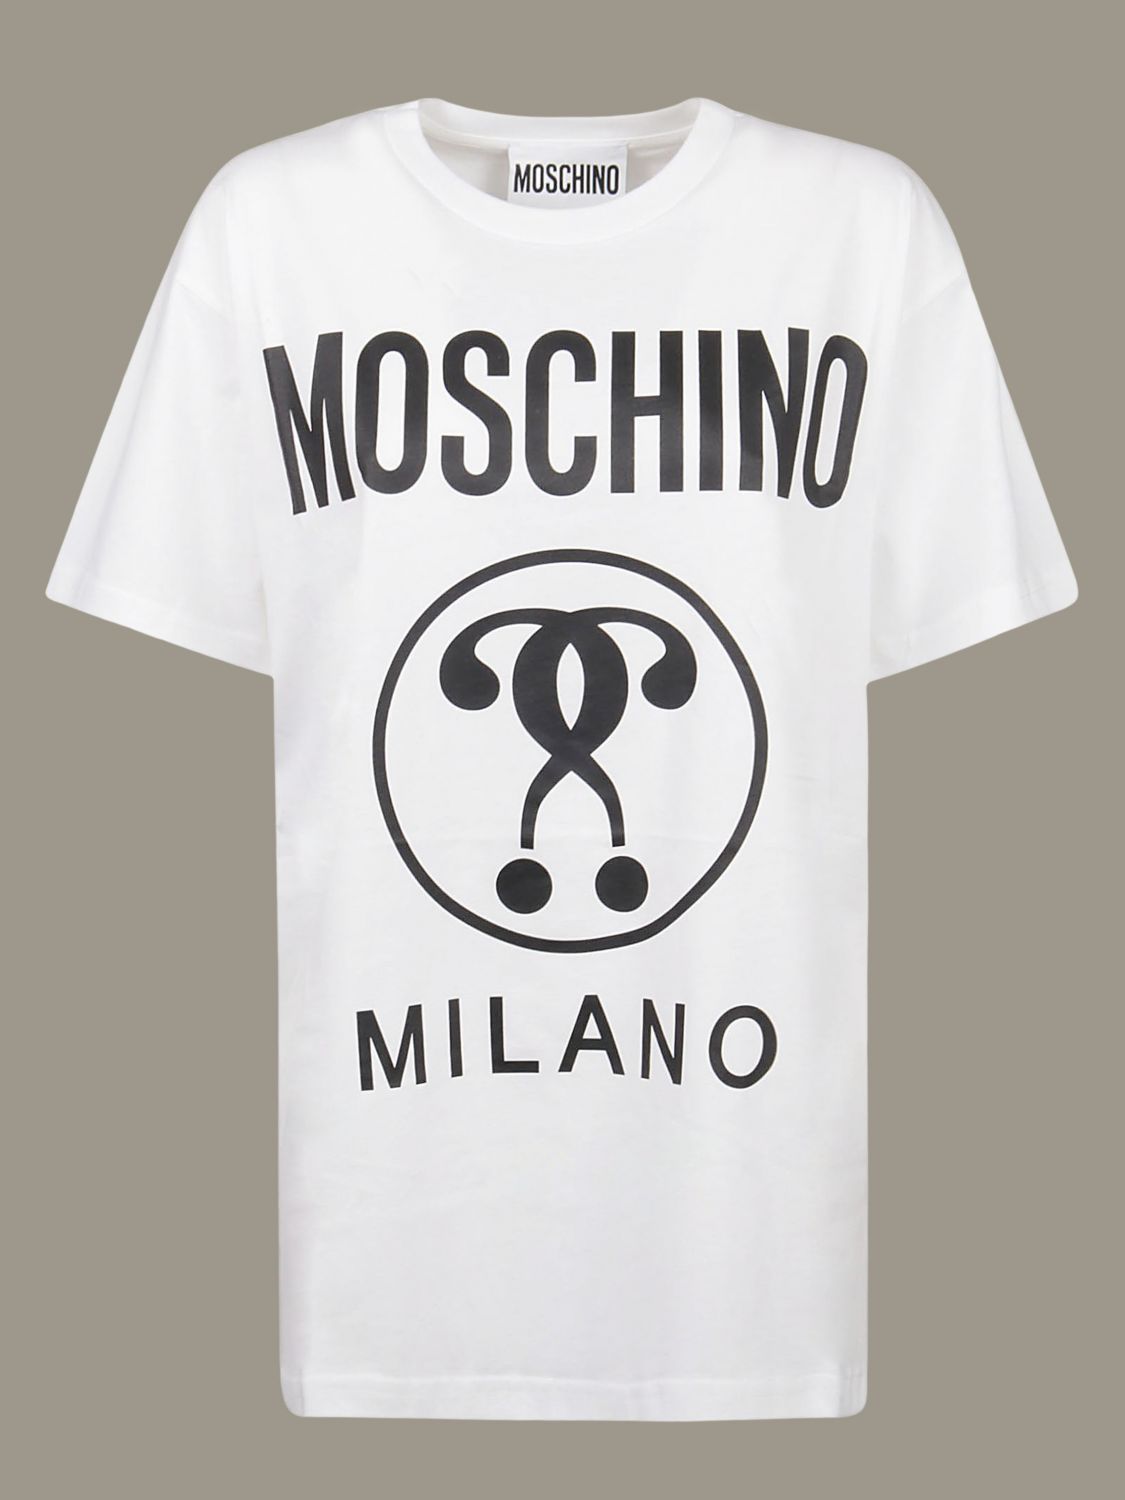 moschino printed t shirt